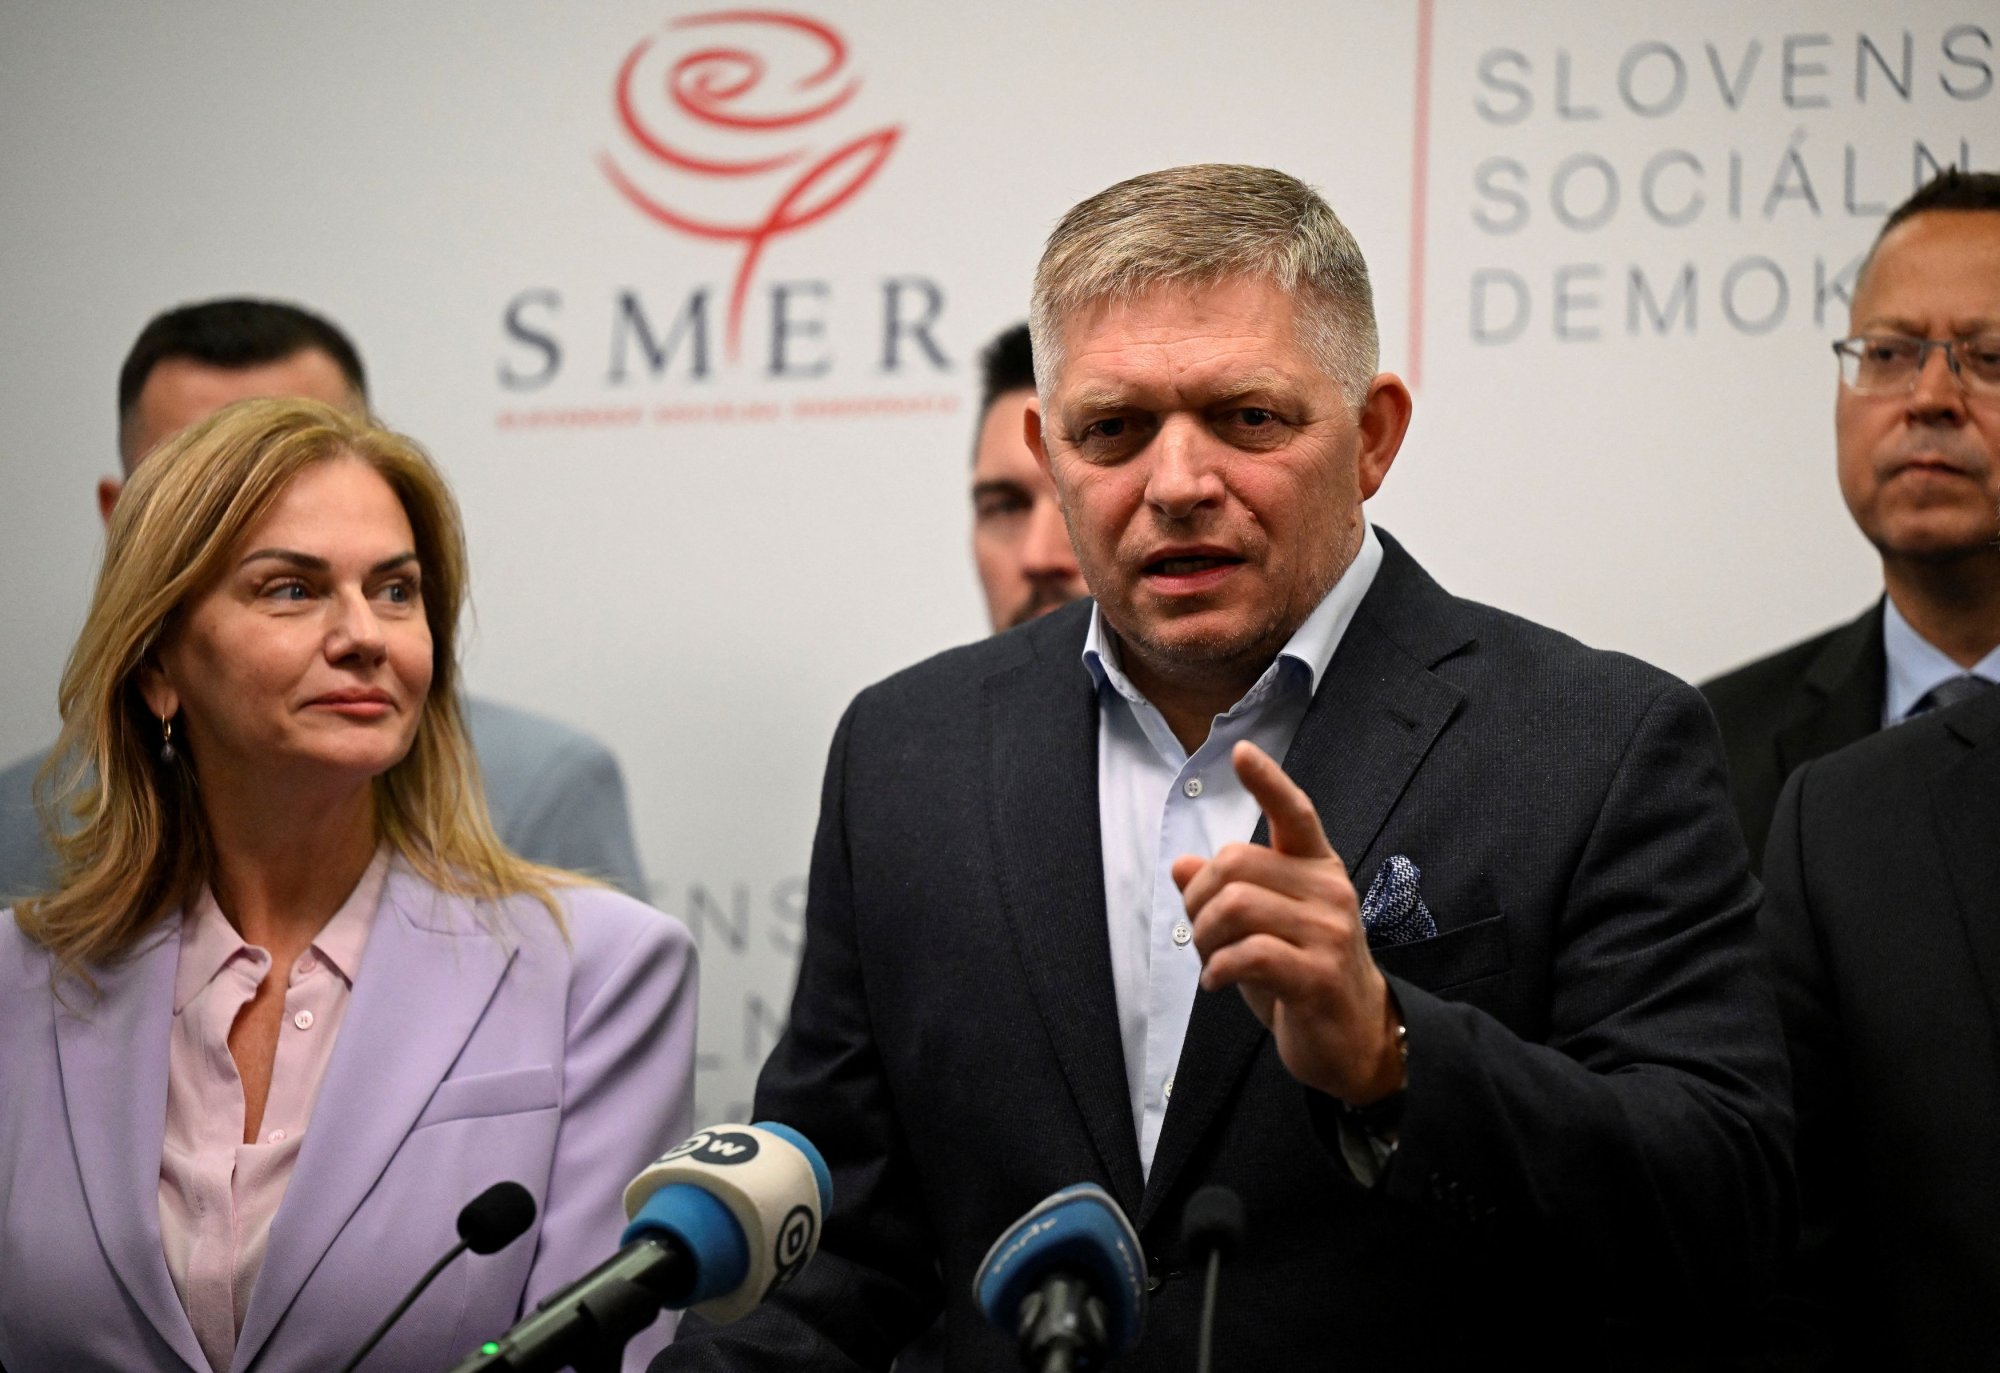 Εκλογές στη Σλοβακία: Εντολή σχηματισμού κυβέρνησης παίρνει ο Φίτσο - Καλά νέα για τον Πούτιν